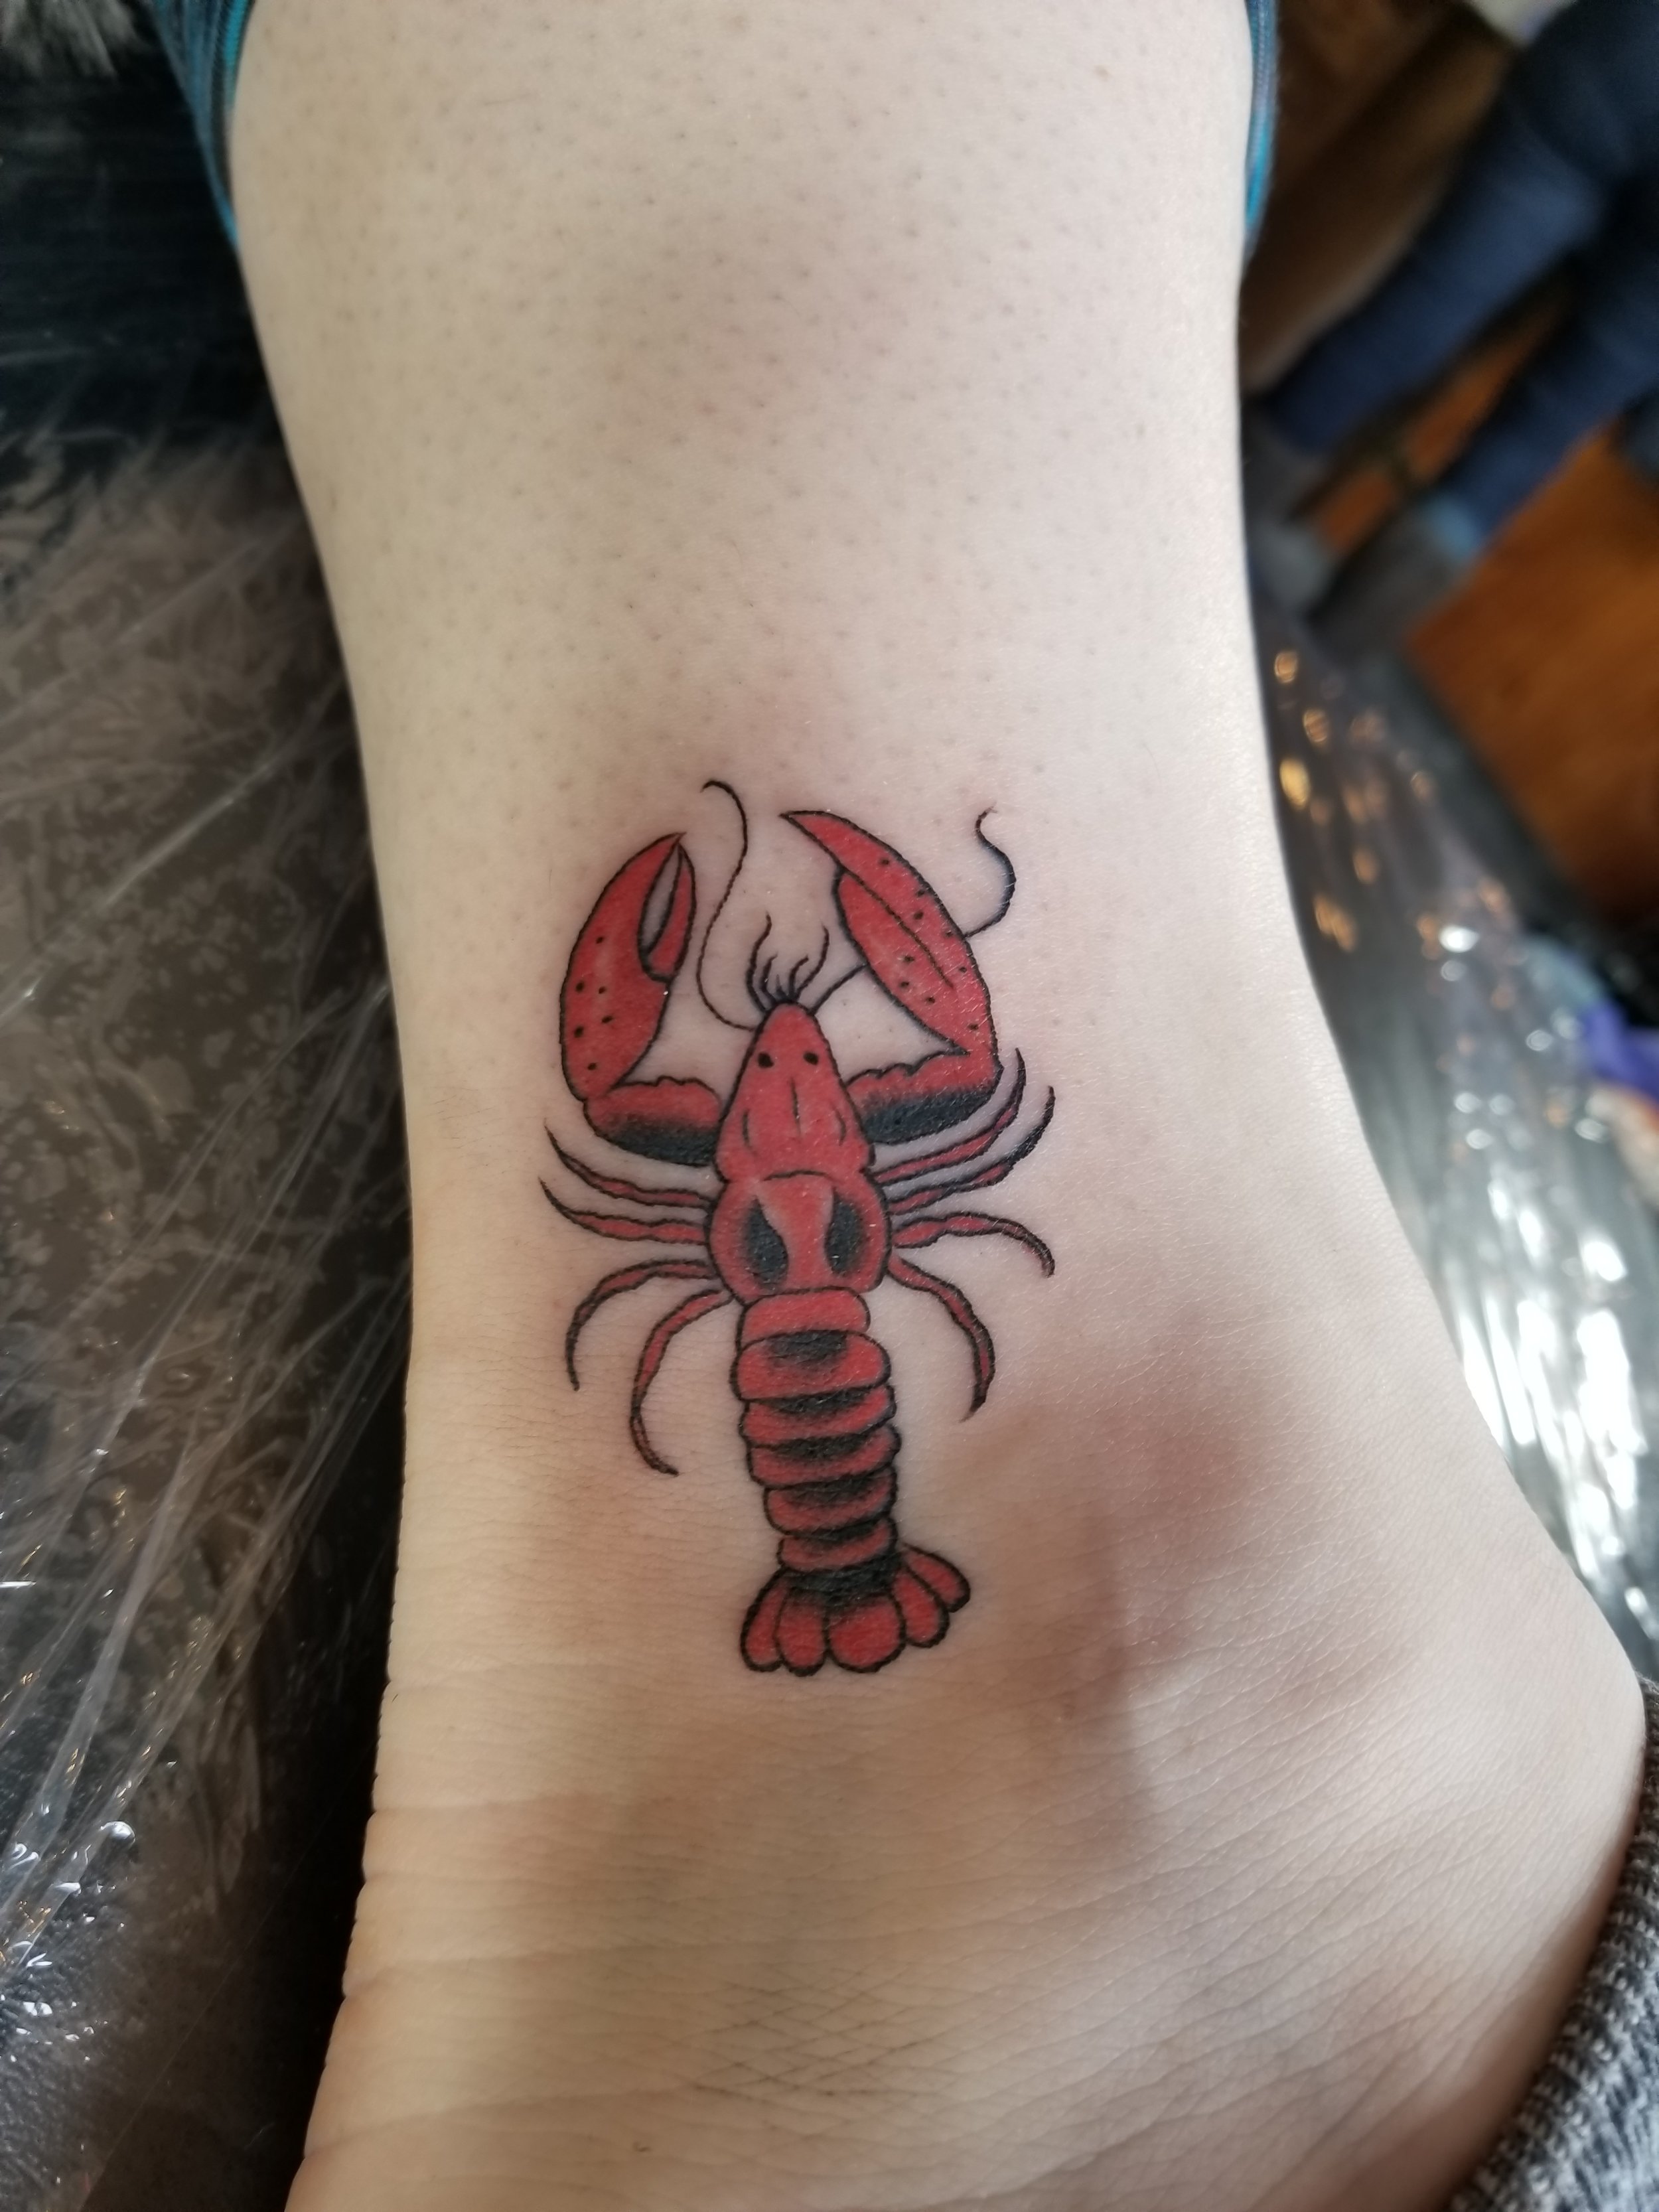 Lobster tattoo Small tattoos Elbow tattoos